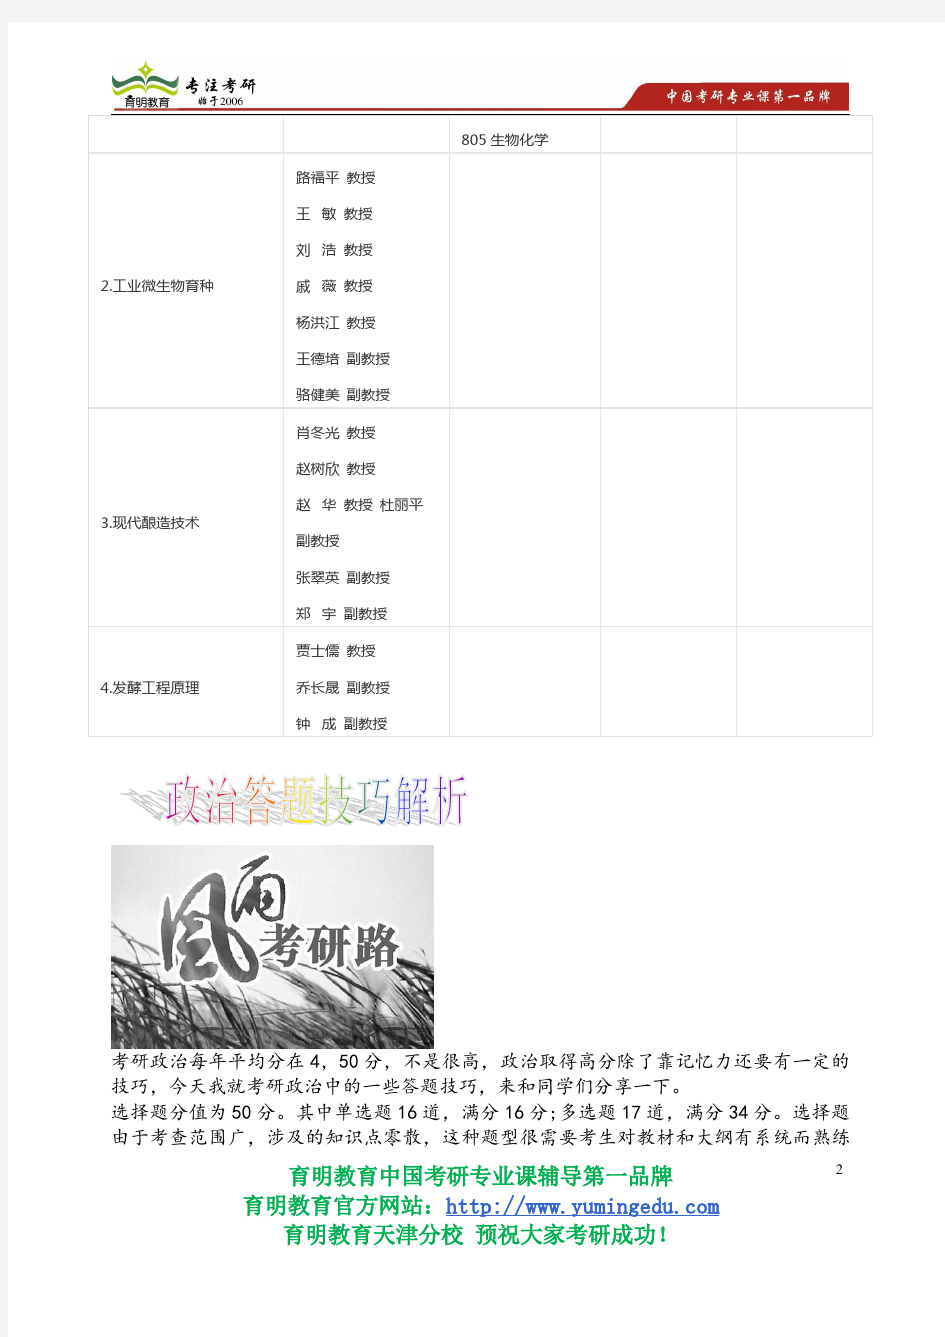 2015年天津科技大学082203发酵工程考研参考书专业课考研真题考录比复试线